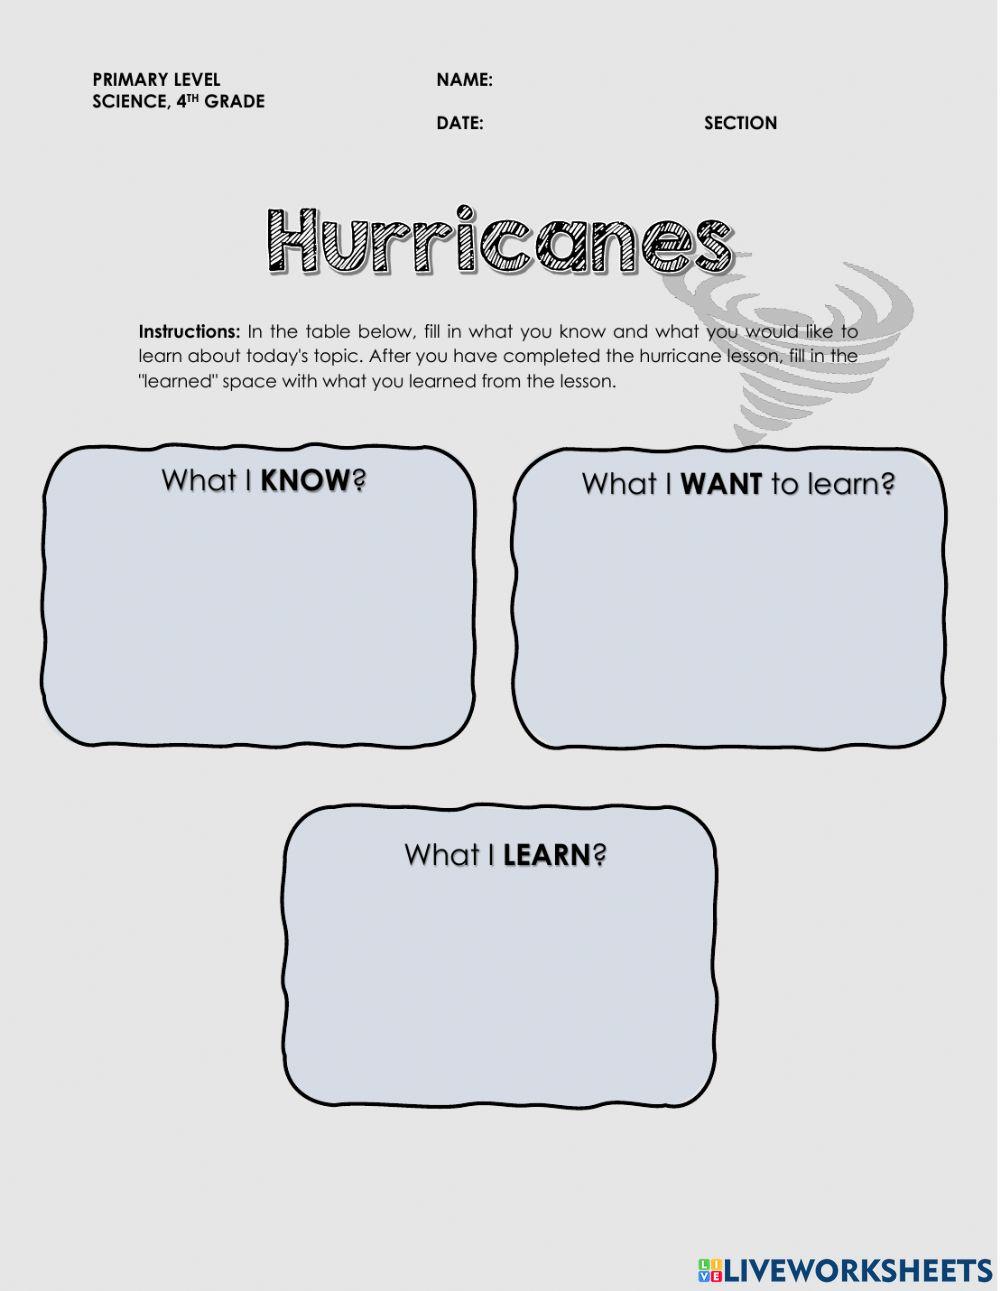 Hurricanes